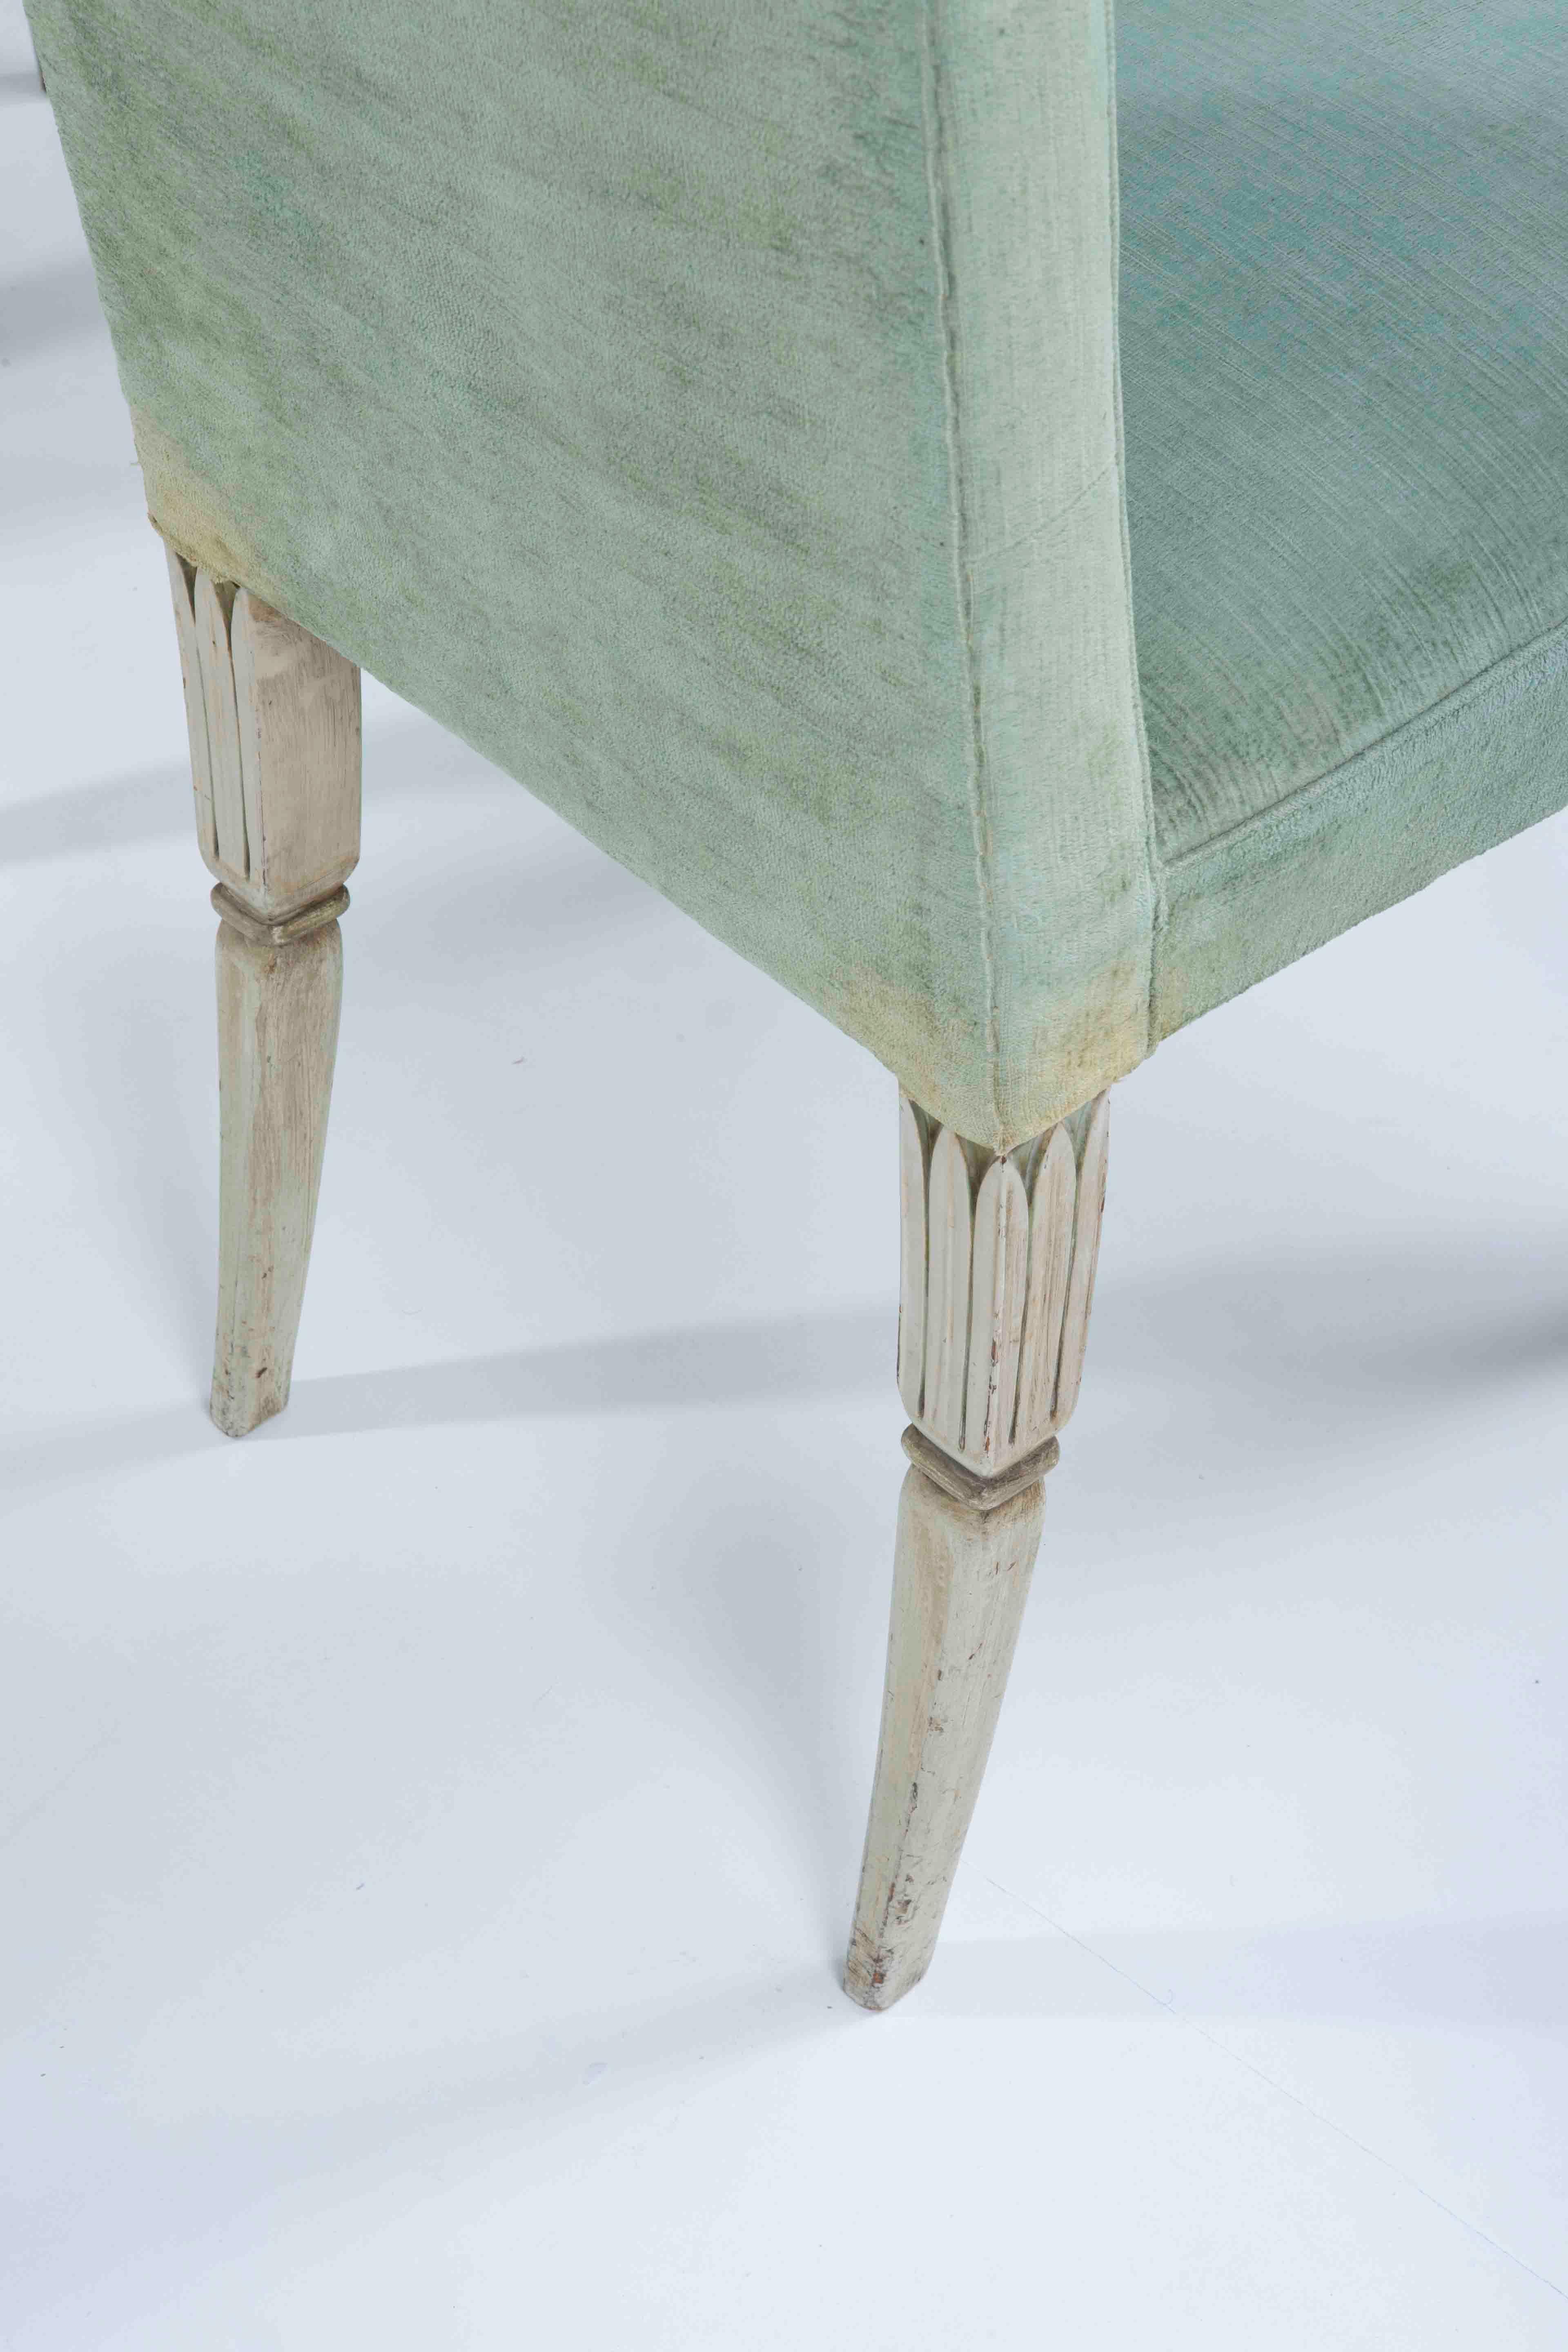 Tissu Tomaso Buzzi - Ensemble de huit chaises - Design italien de 1954 réalisé sur commande privée en vente